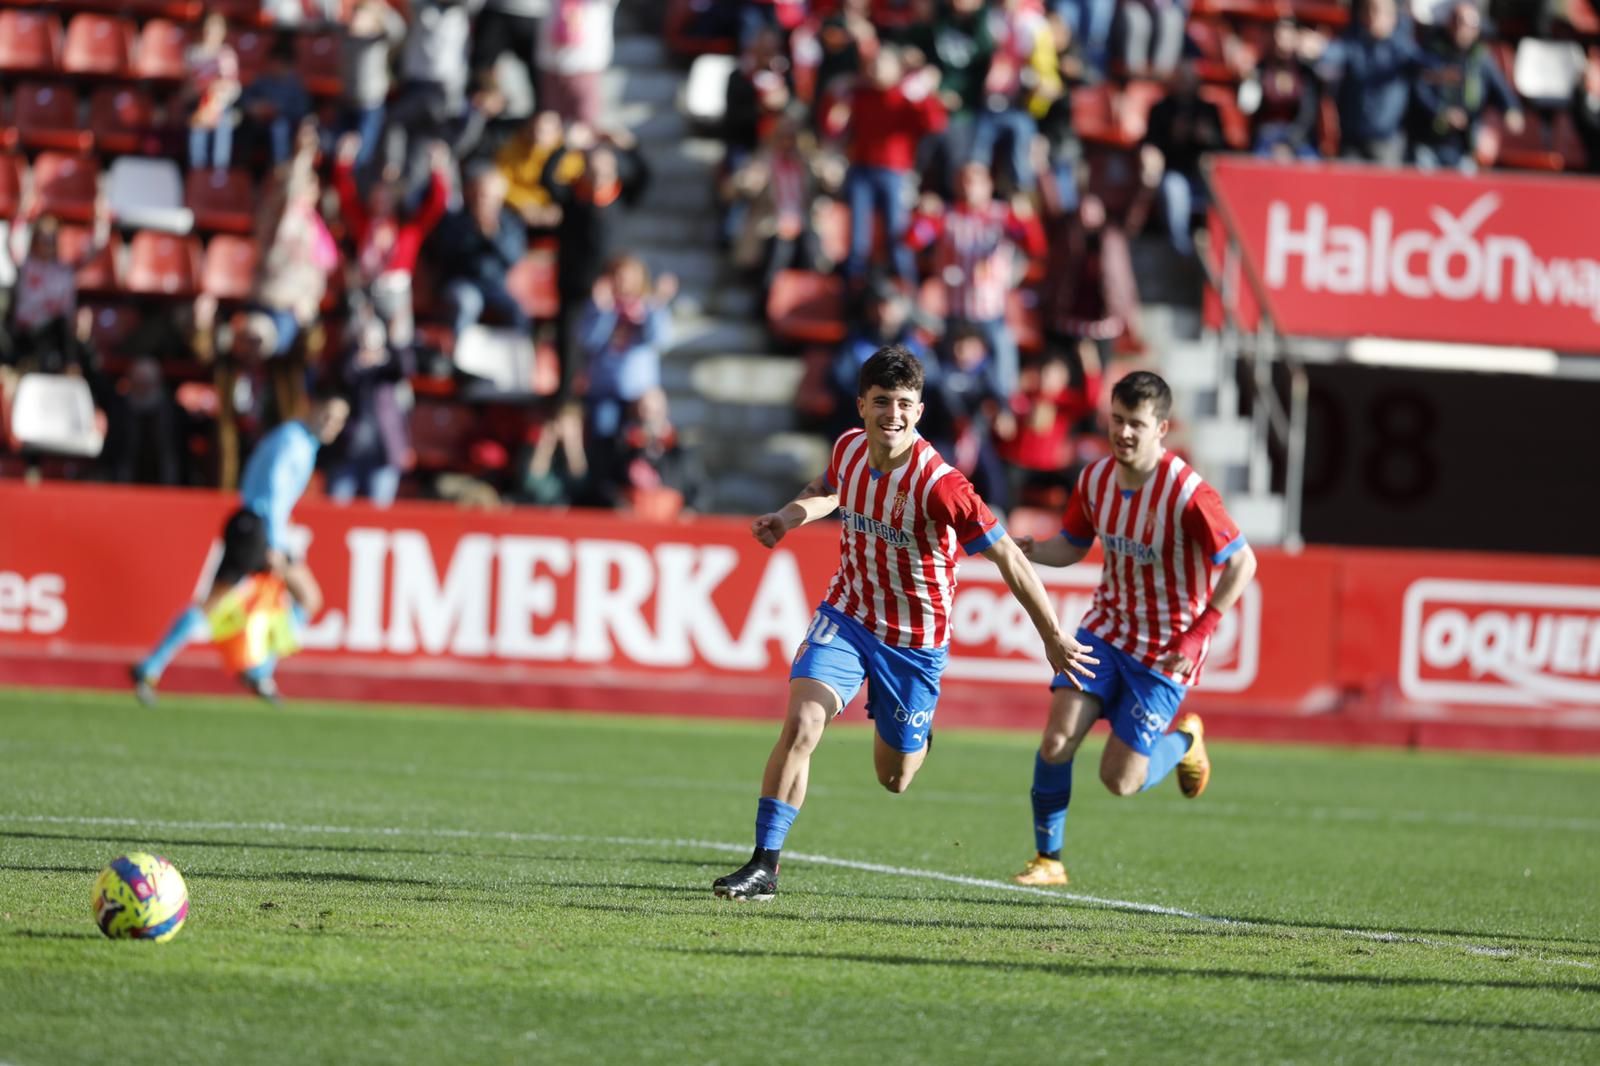 EN IMÁGENES: El encuentro entre el Sporting y el Real Zaragoza